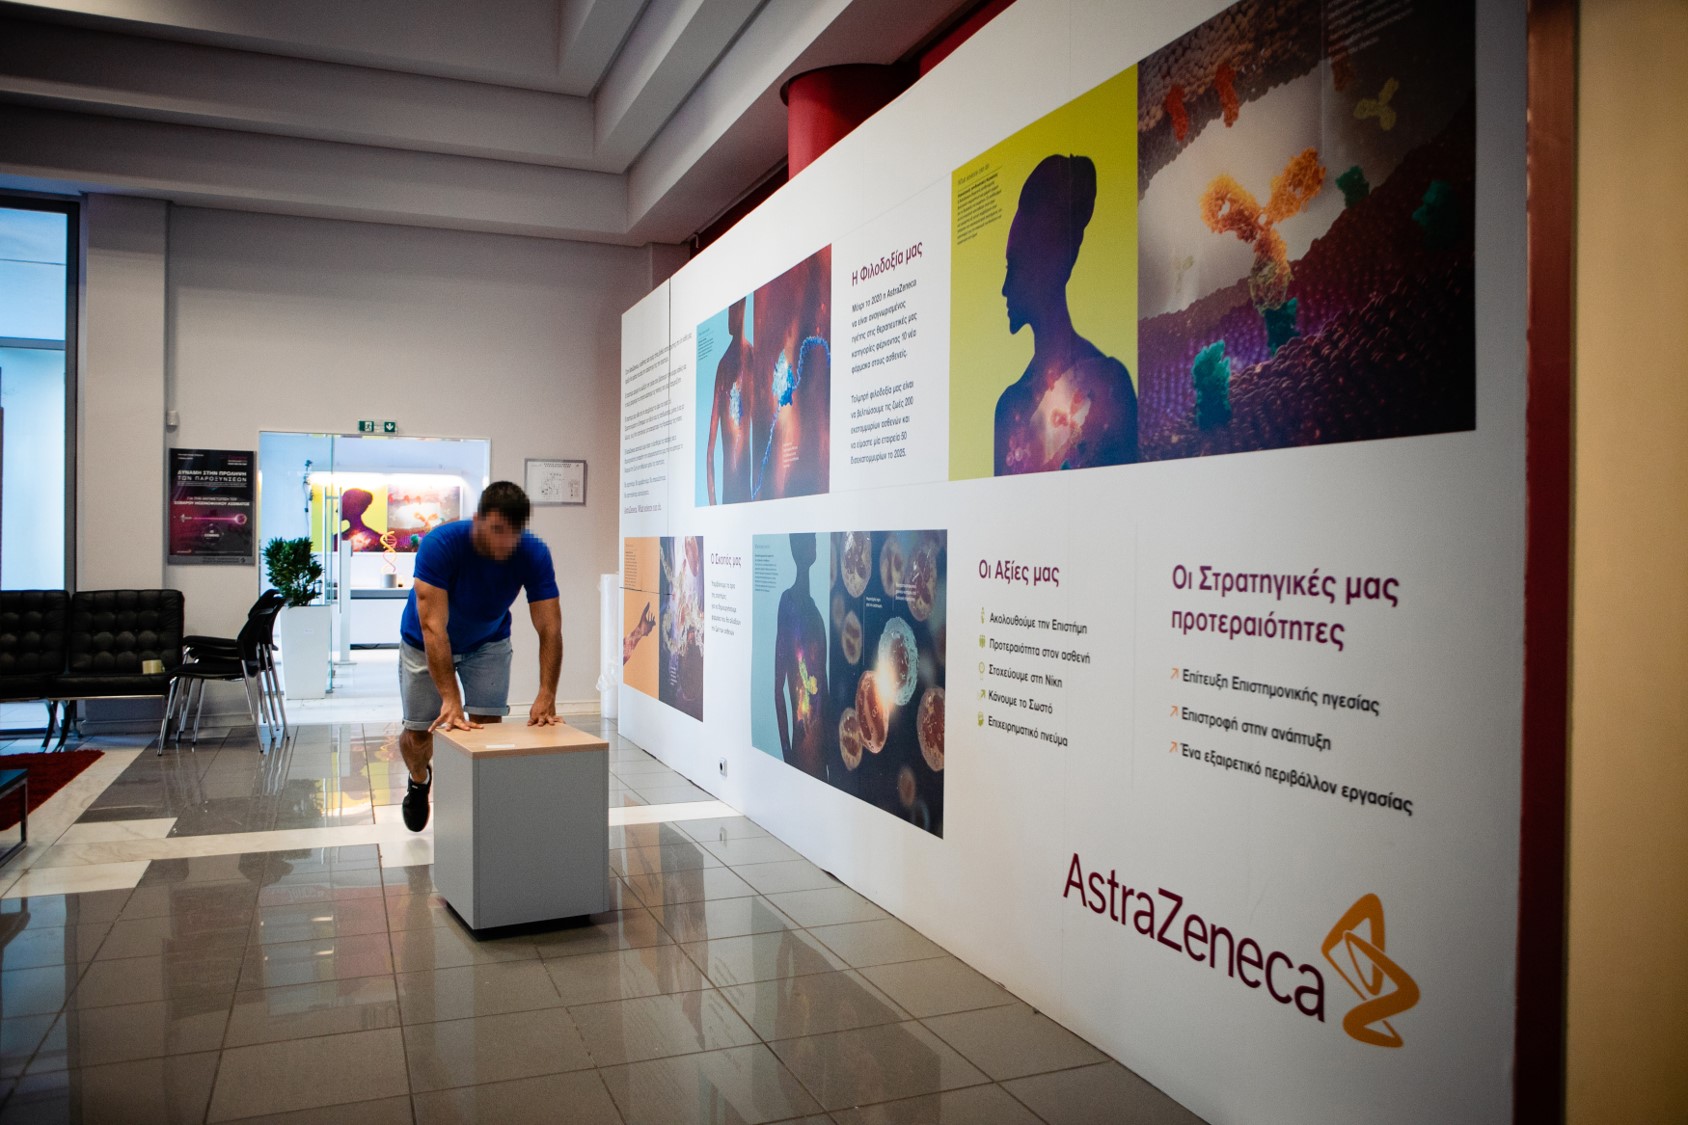 Υλικοτεχνικό εξοπλισμό  σε 30 κοινωφελείς ΜΚΟ προσφέρει η Astra Zeneca για τα 30α γενεθλια της